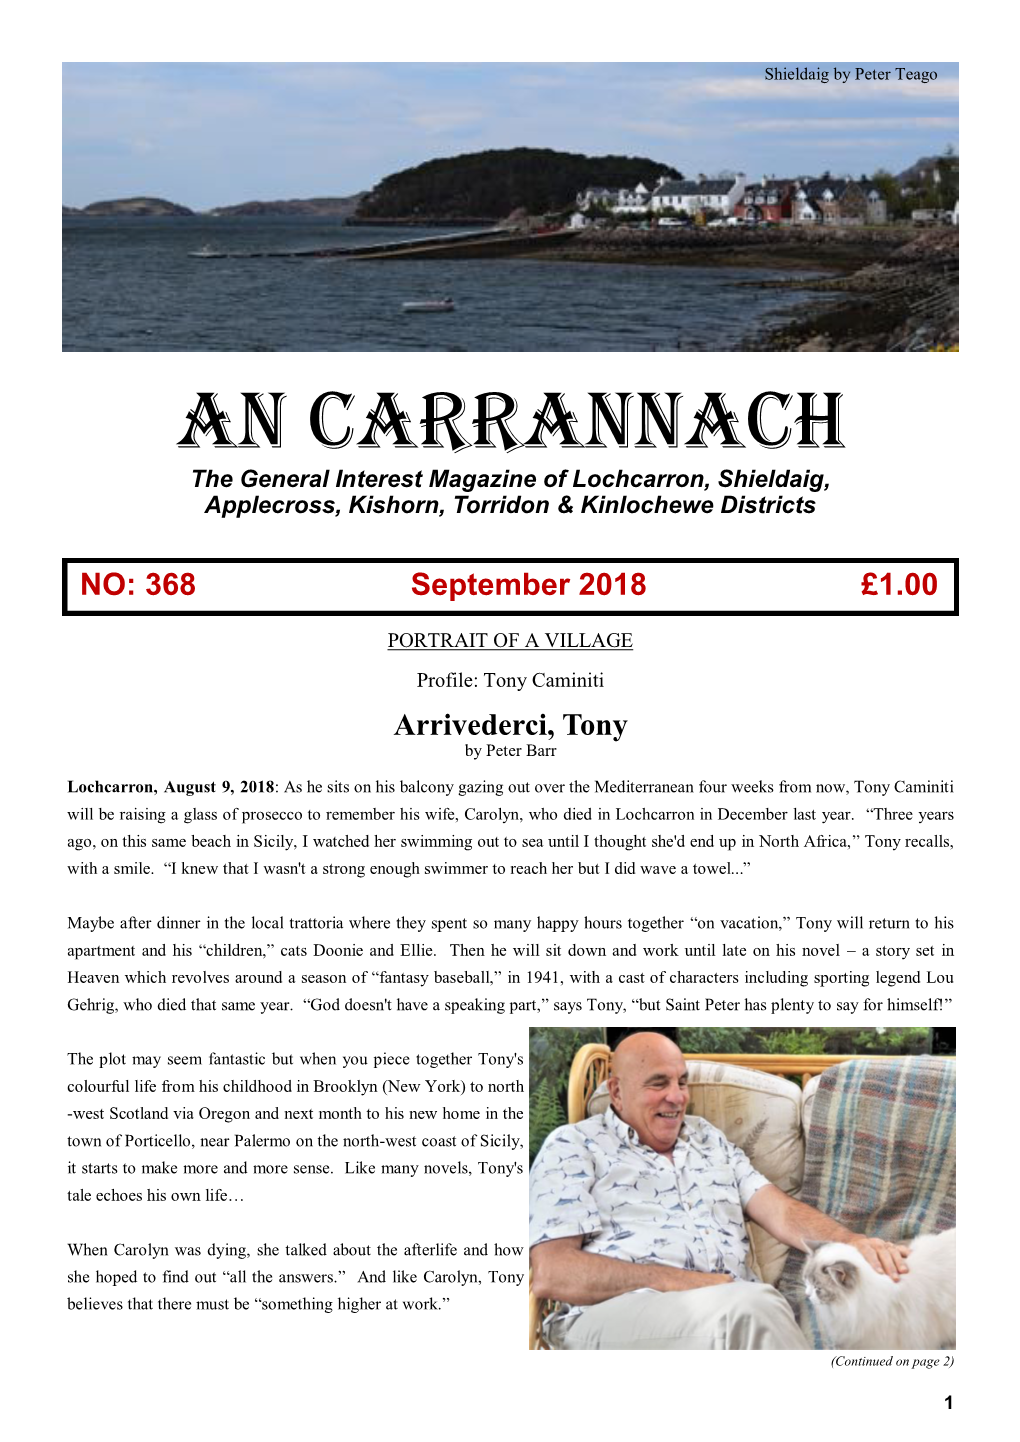 An Carrannach the General Interest Magazine of Lochcarron, Shieldaig, Applecross, Kishorn, Torridon & Kinlochewe Districts